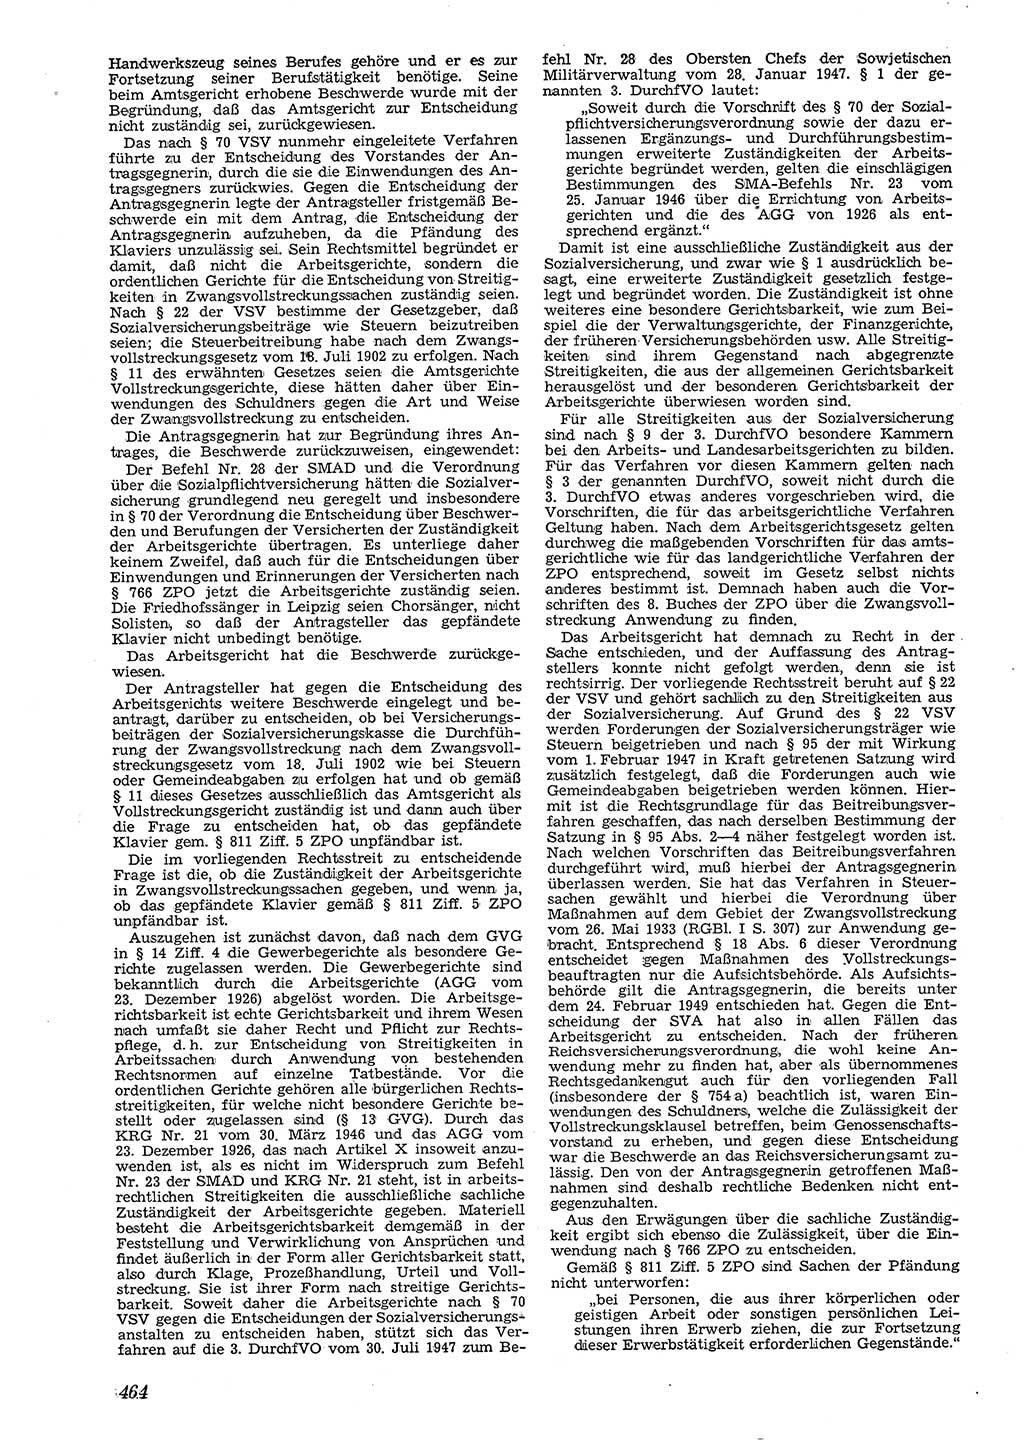 Neue Justiz (NJ), Zeitschrift für Recht und Rechtswissenschaft [Deutsche Demokratische Republik (DDR)], 4. Jahrgang 1950, Seite 464 (NJ DDR 1950, S. 464)